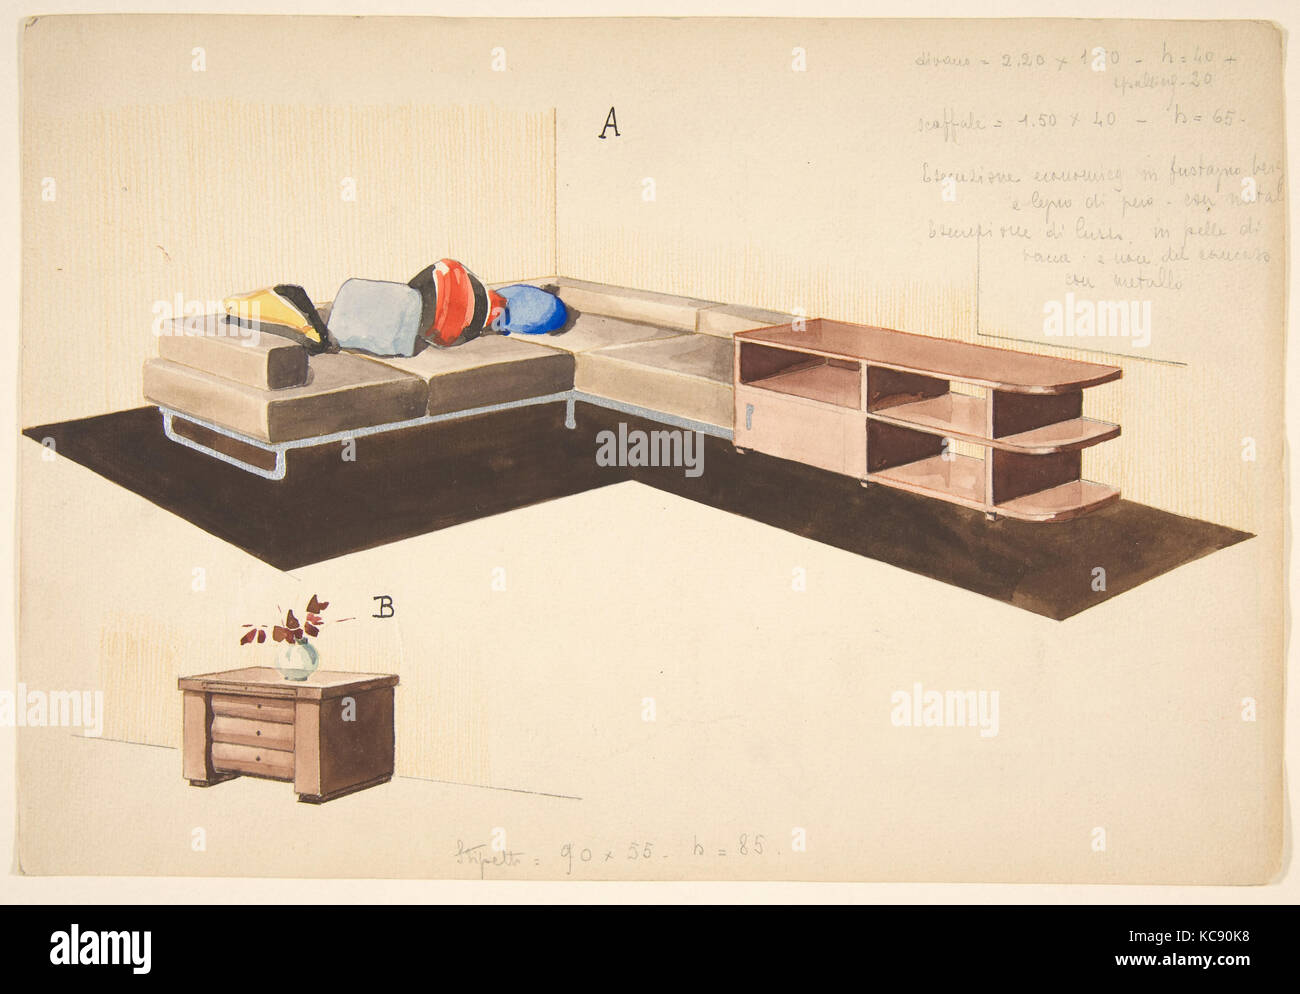 Divano, seoffale, e stipetto prospettica di forma a L divano e unità di archiviazione, Guglielmo Ulrich, 1933 Foto Stock